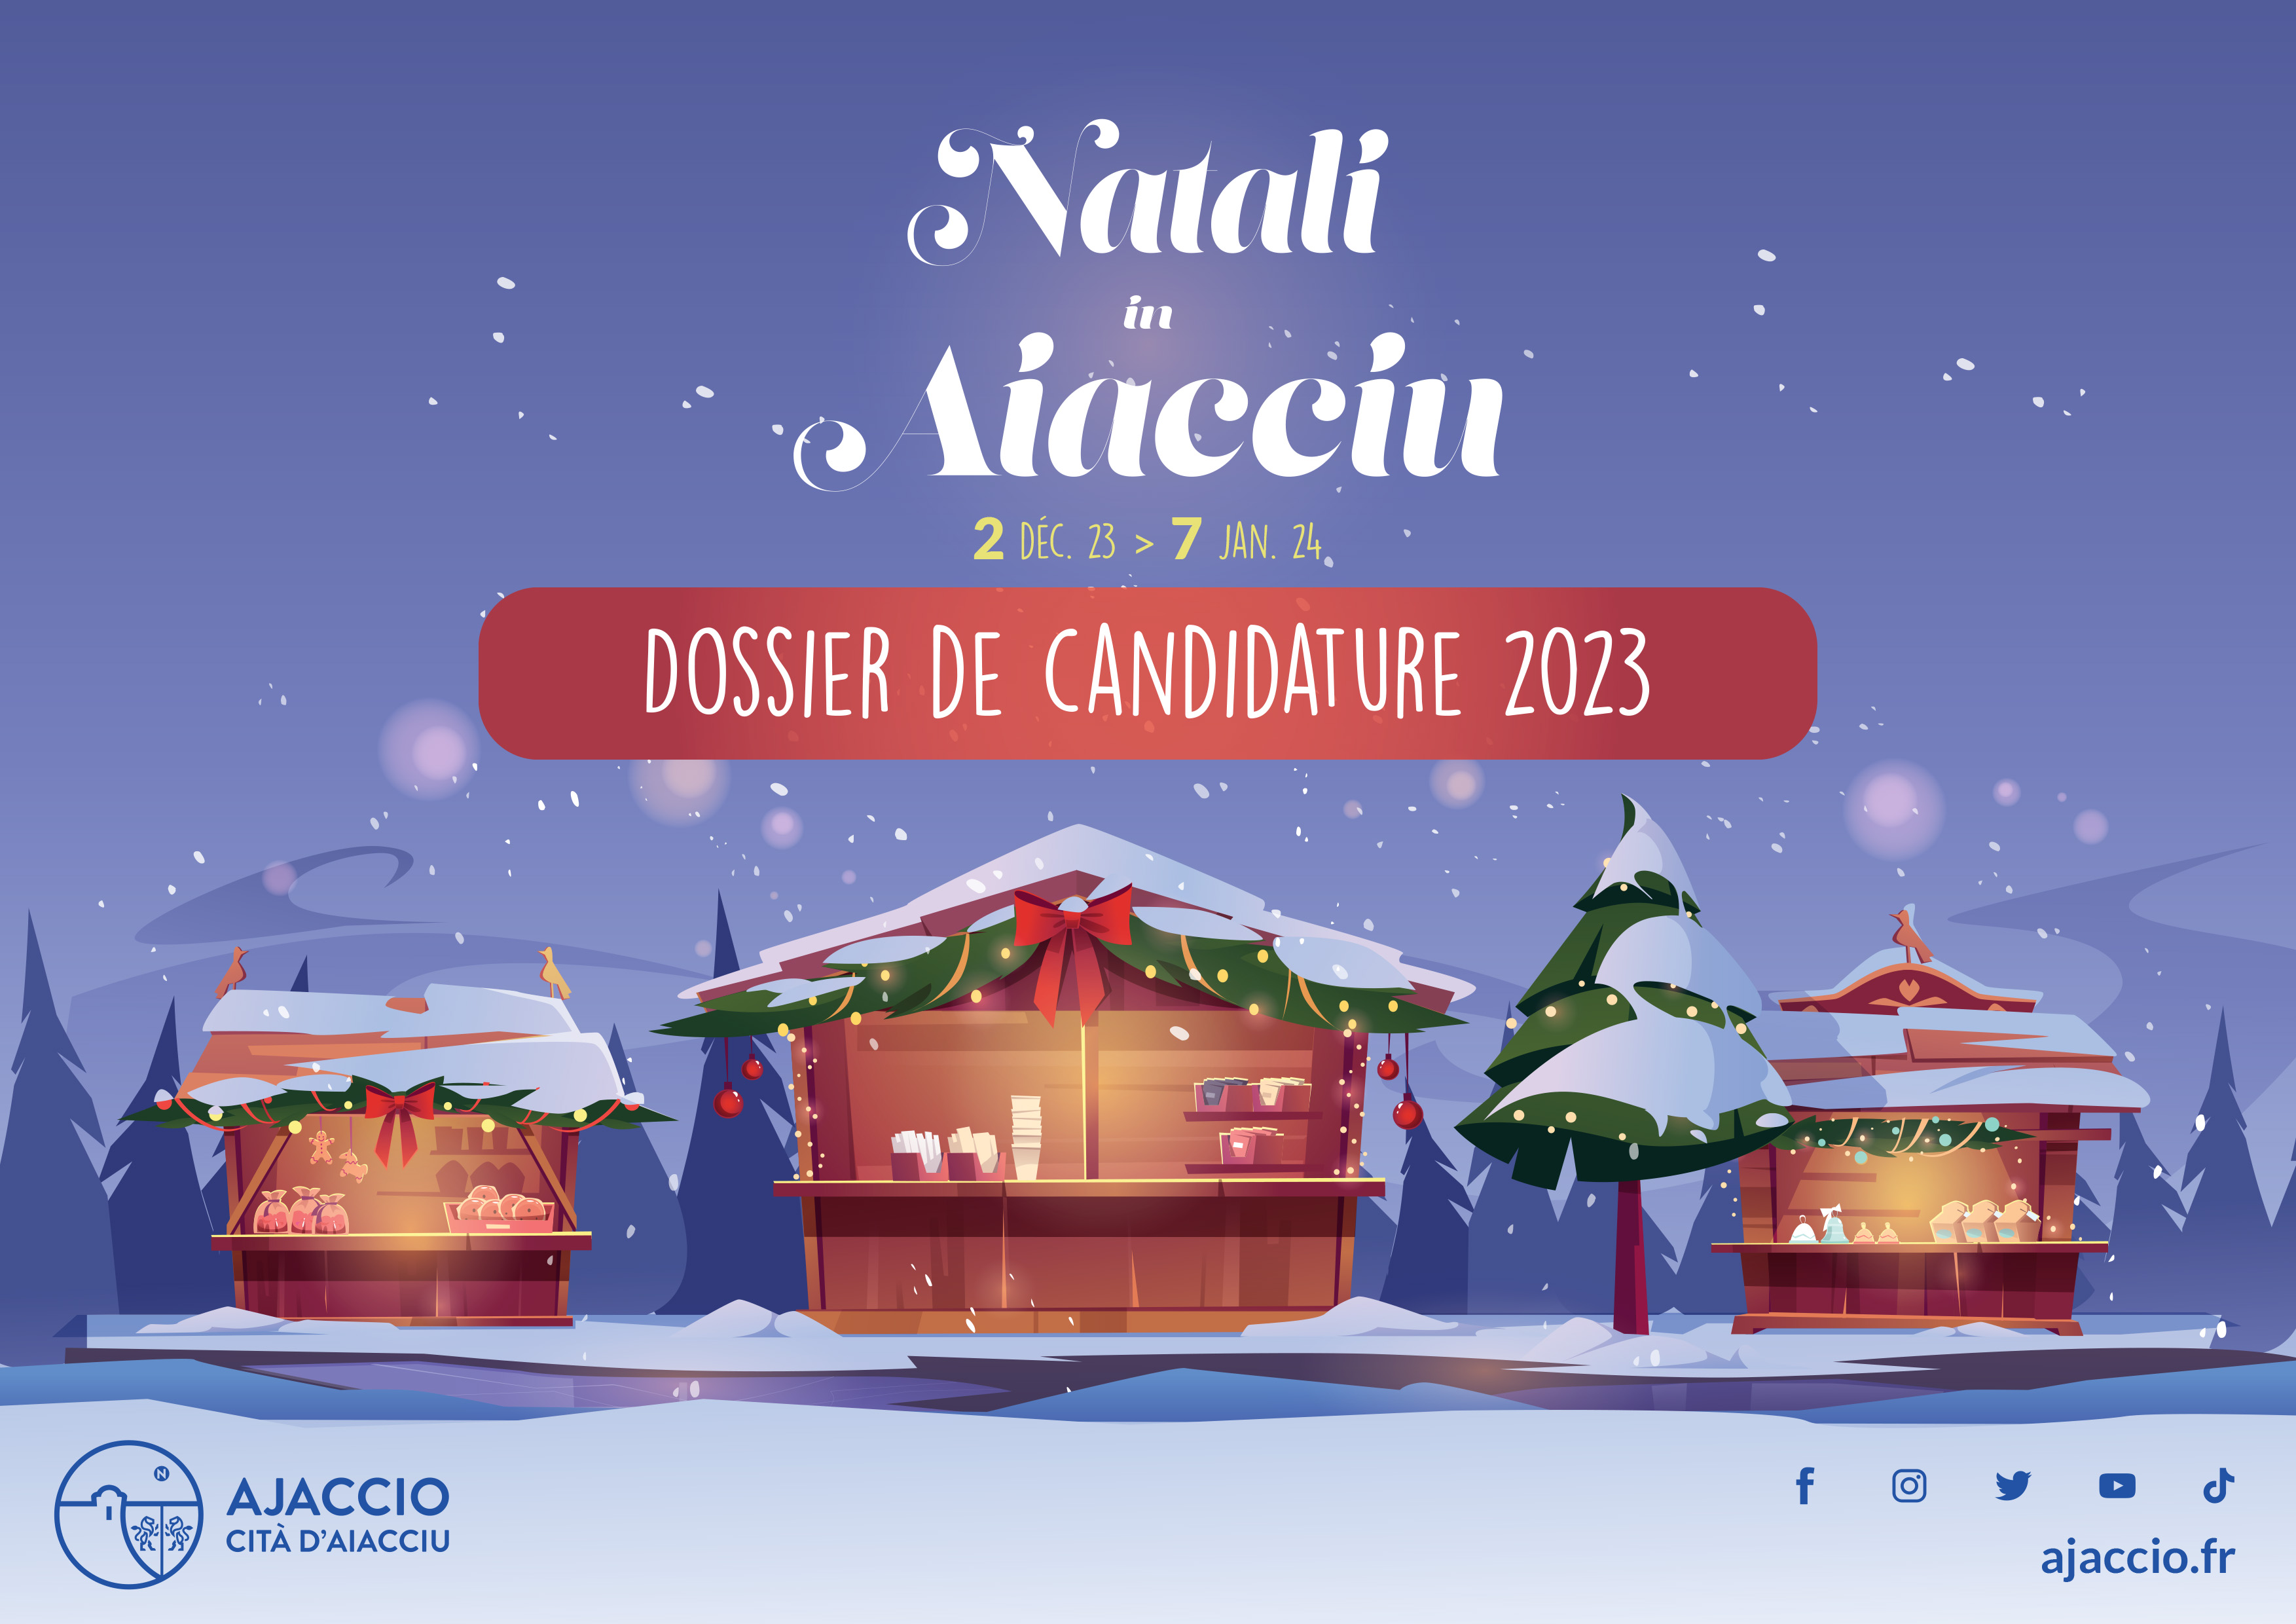 Natali in Aiacciu, appels à candidatures pour l'édition 2023